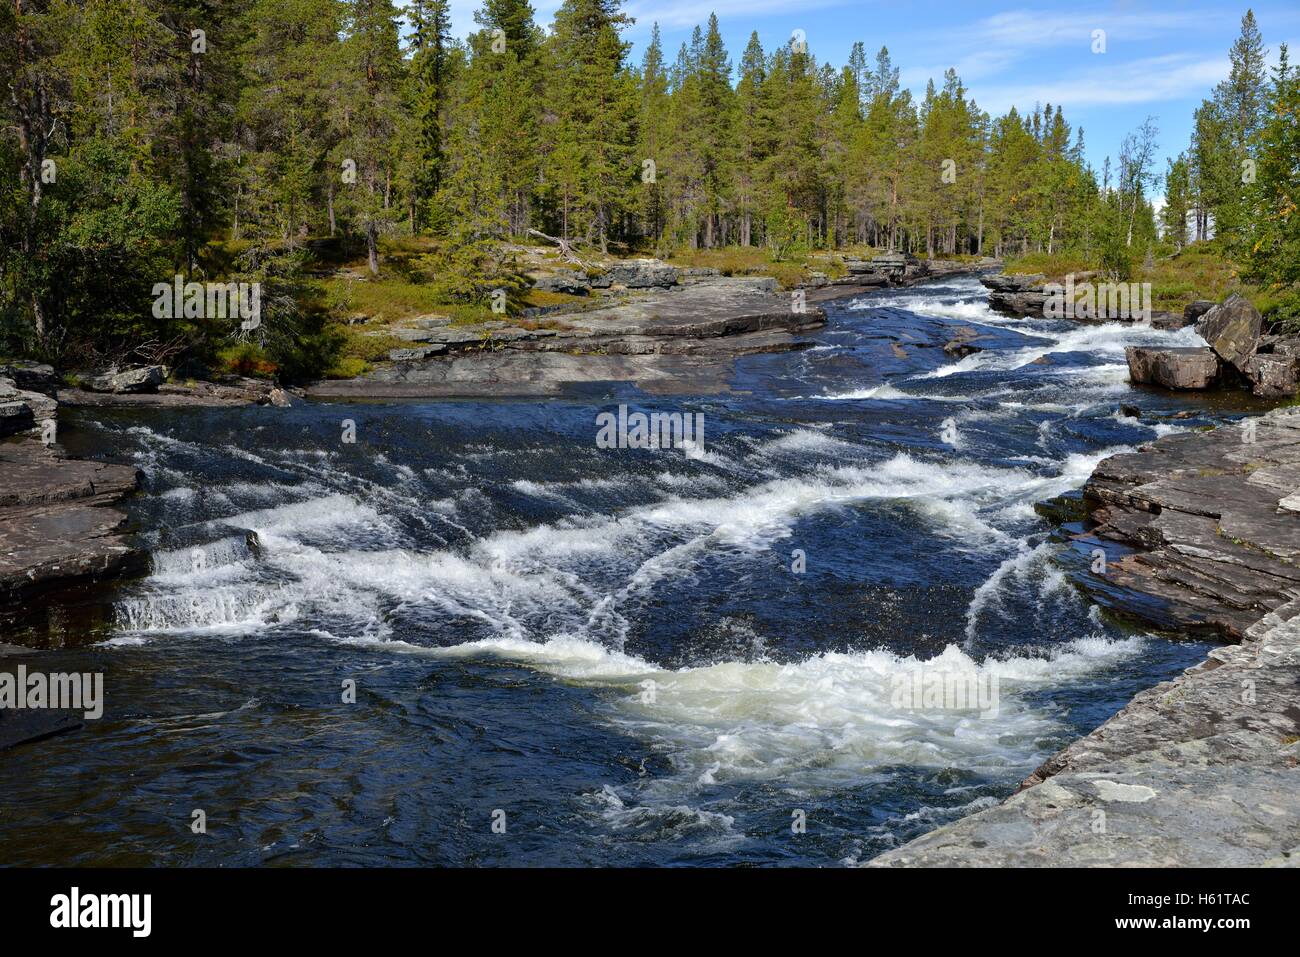 Rövran la rivière, Guiclan, Jämtland, Suède Banque D'Images